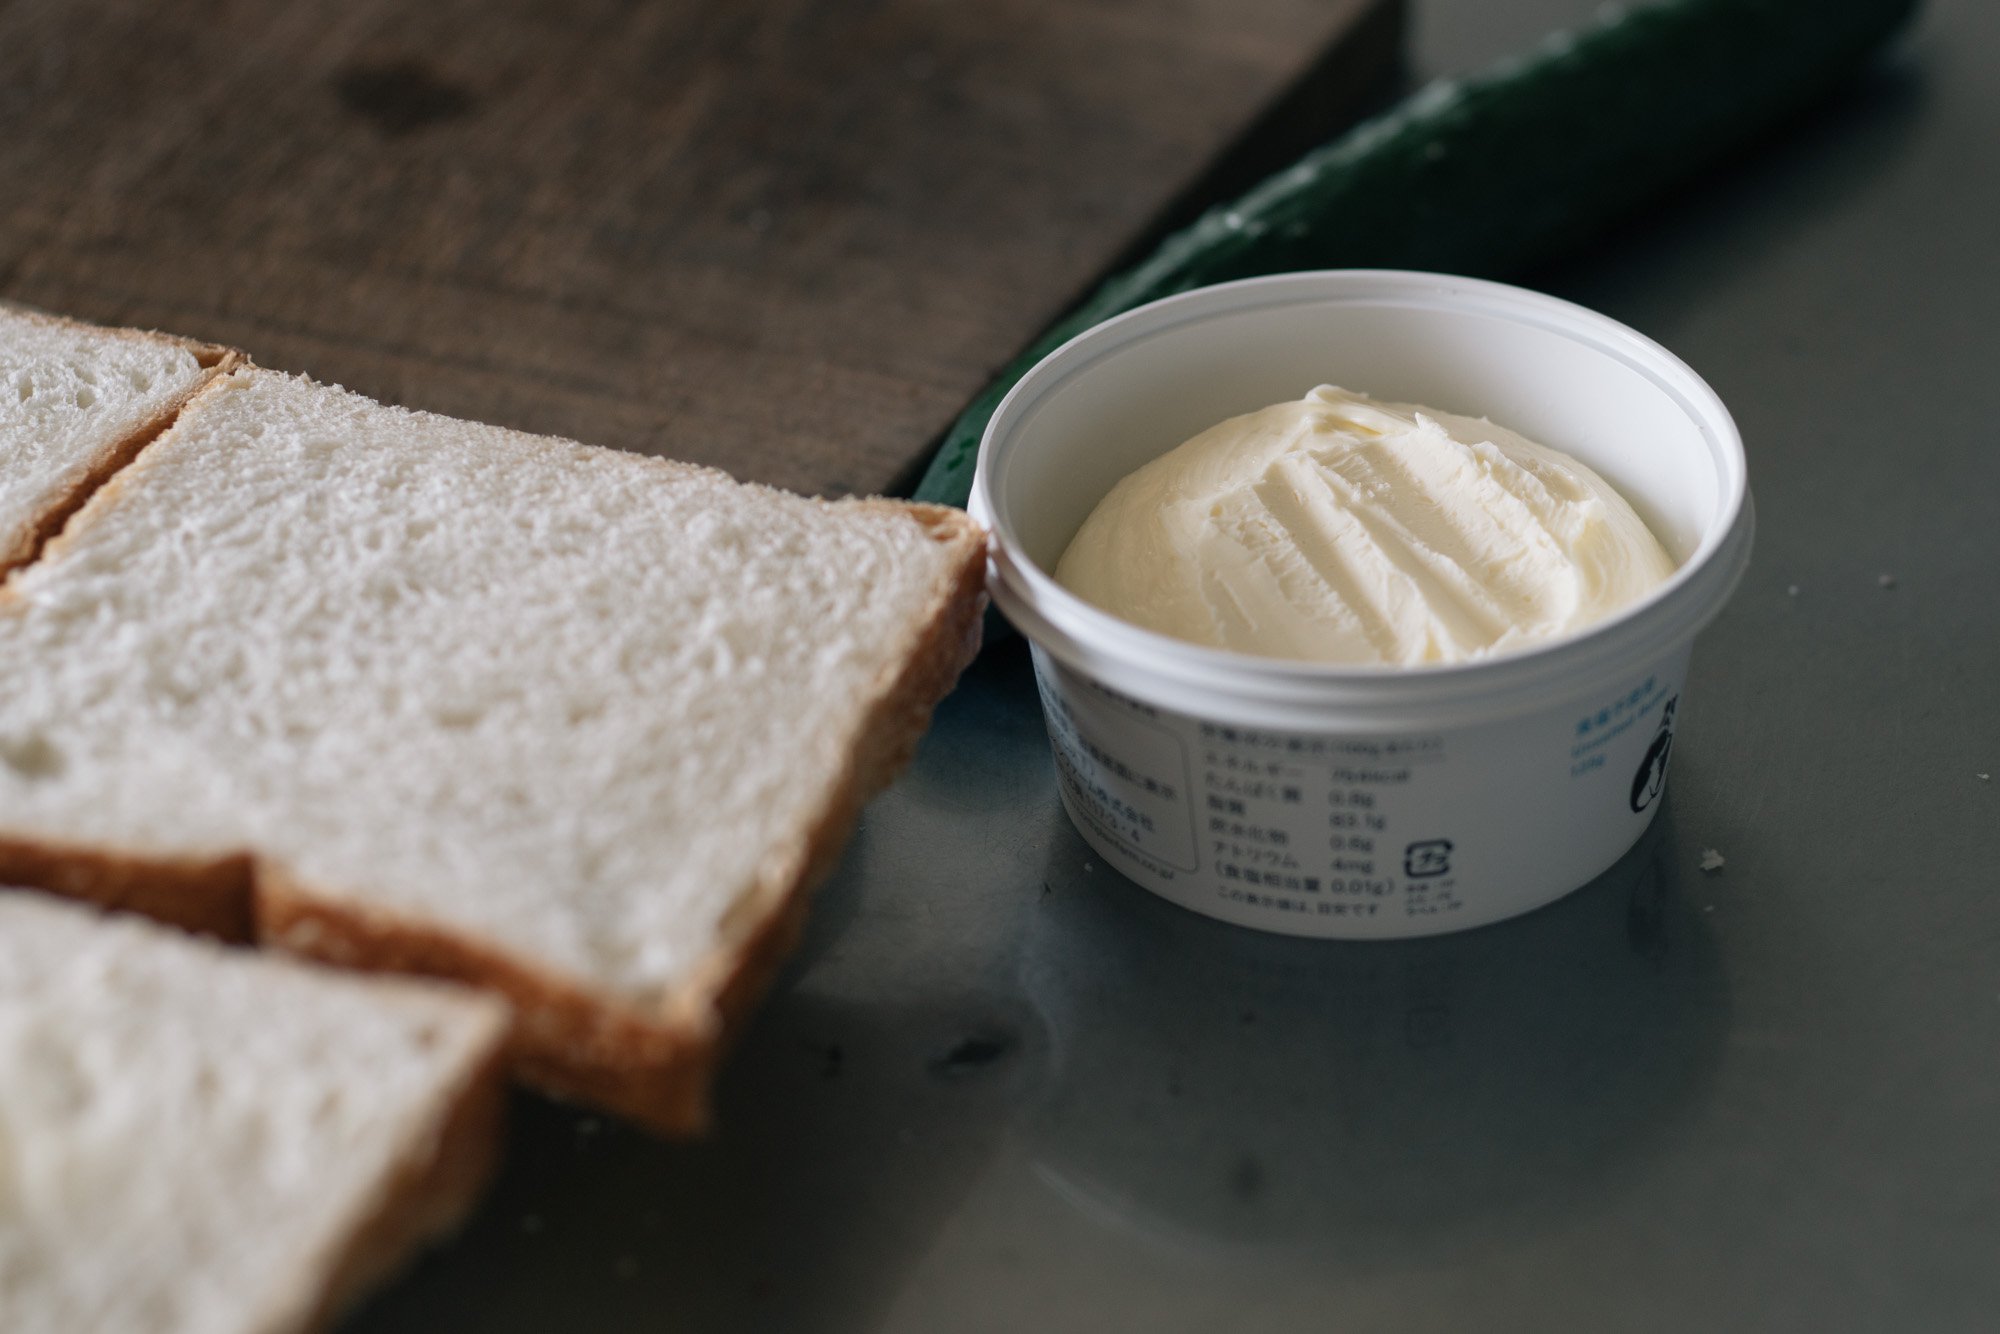  ノースプレインファーム オホーツクおこっぺ醗酵バター